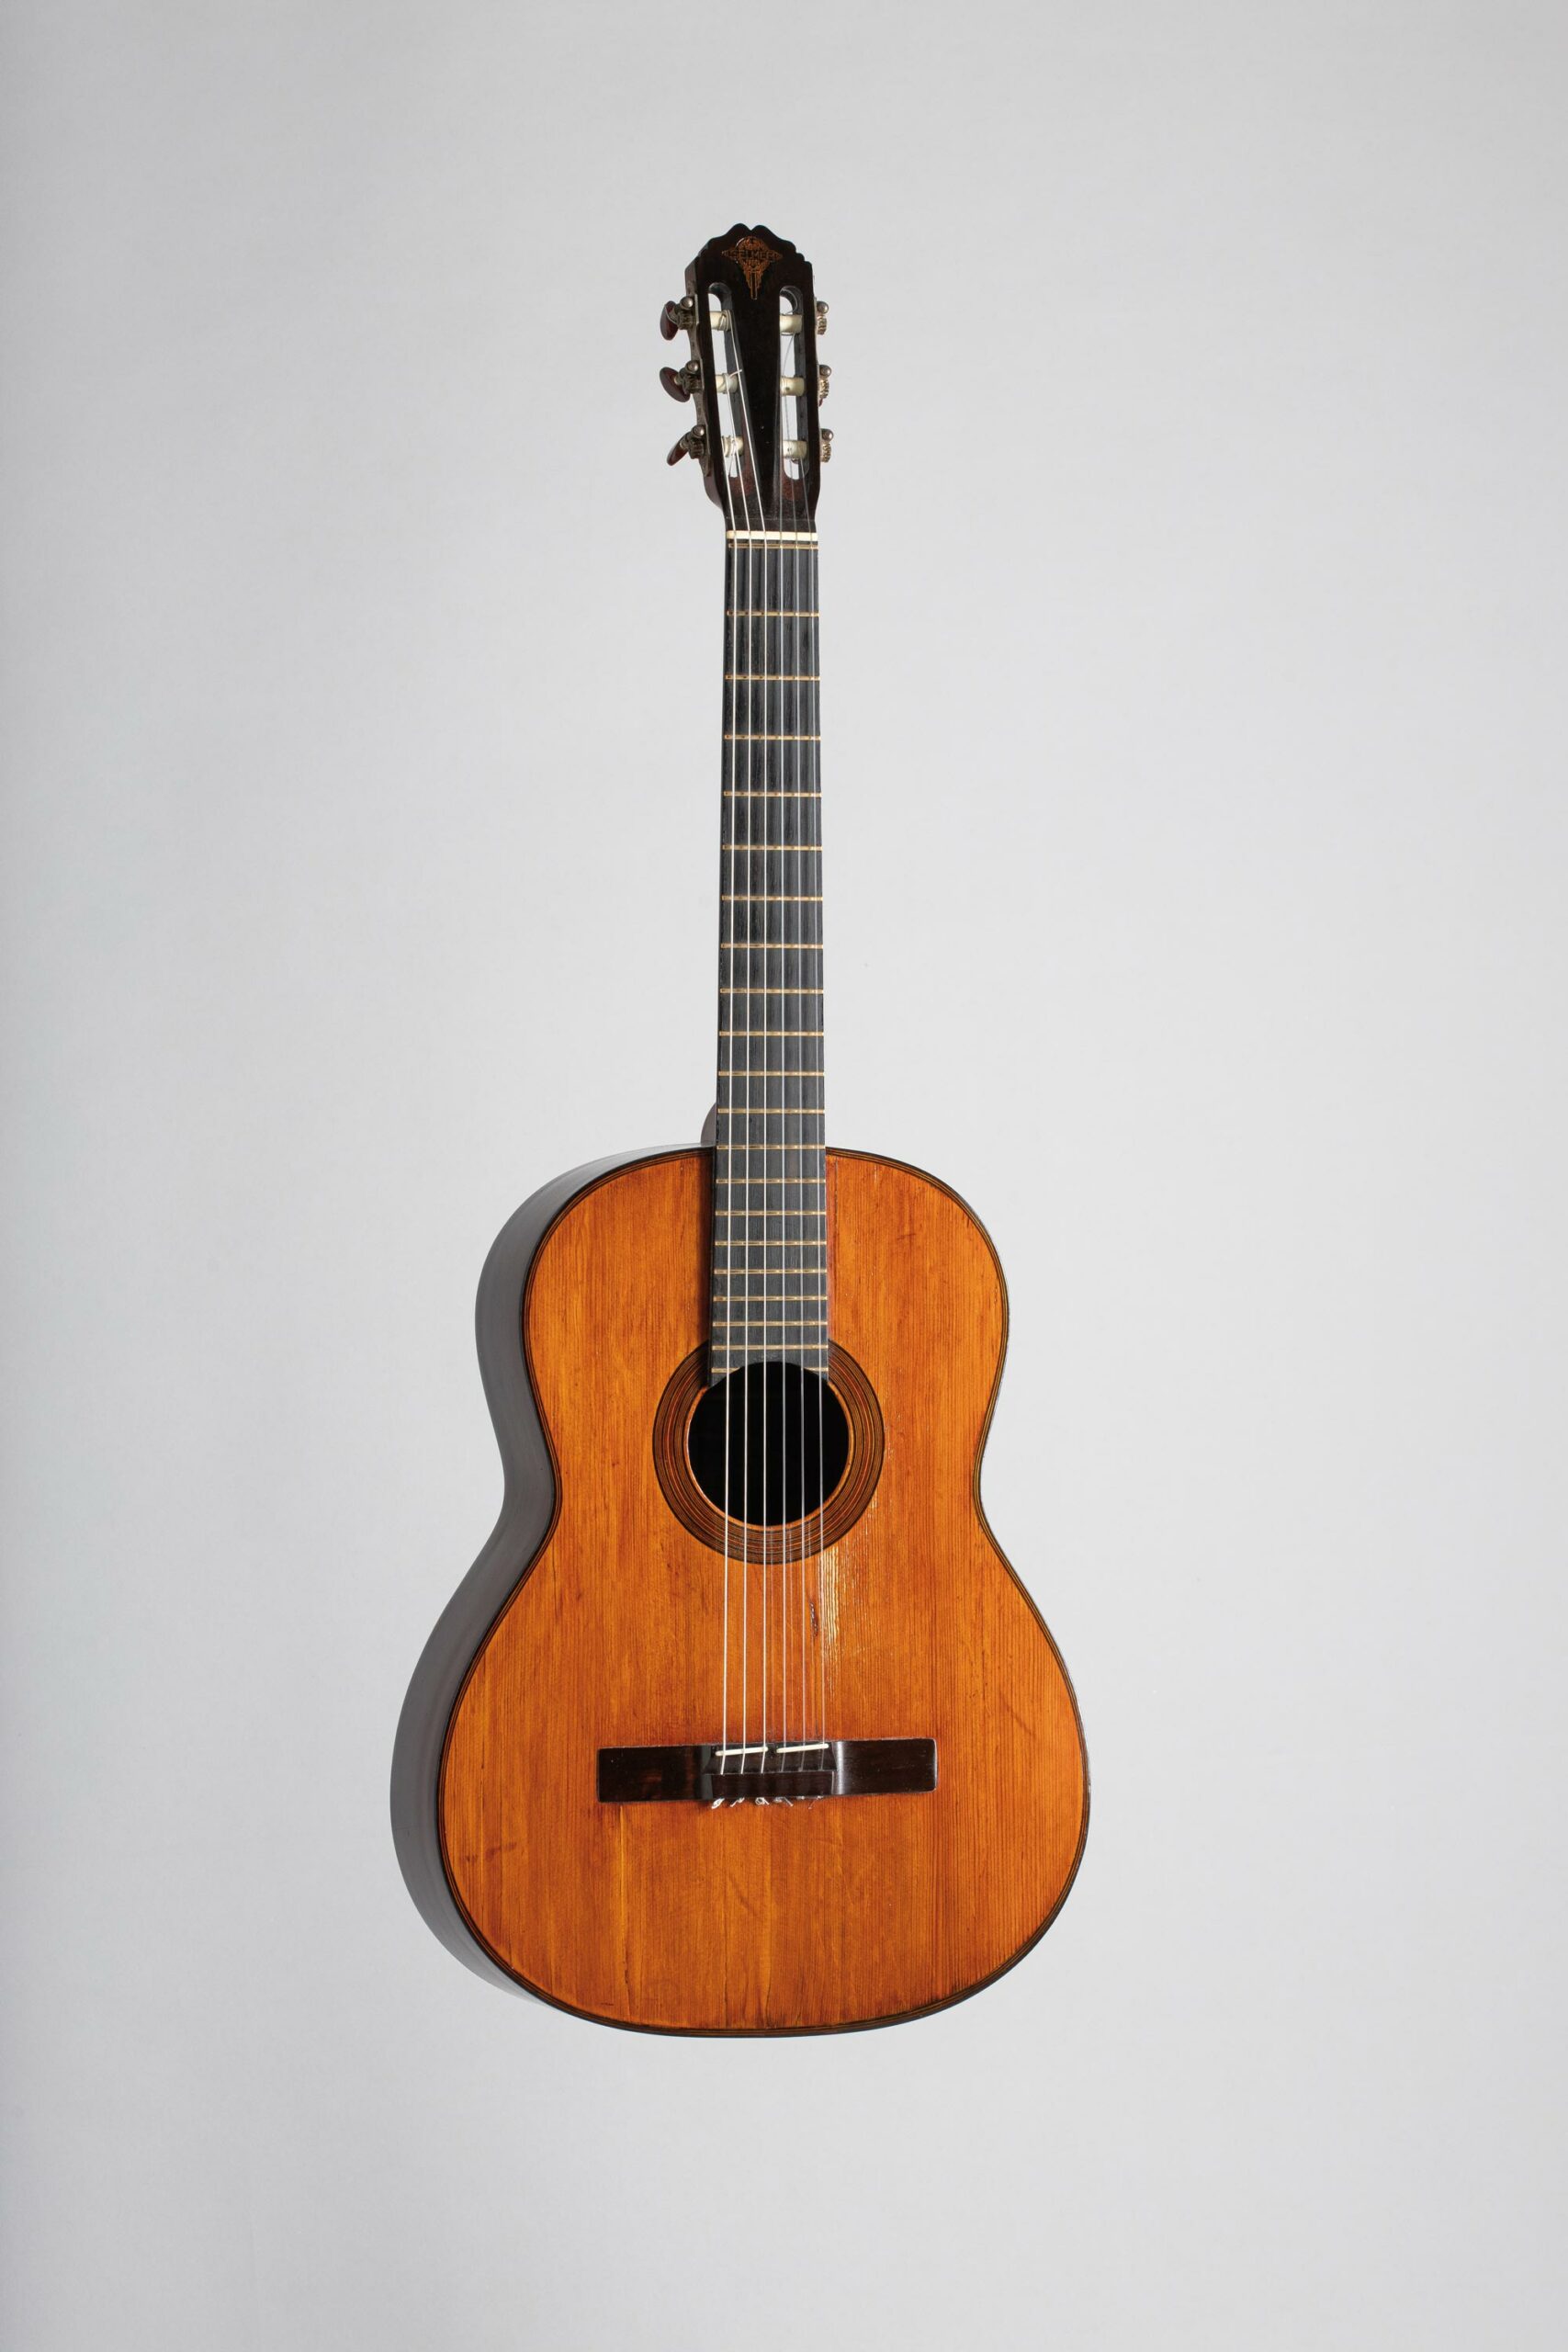 Guitare de marque SELMER, modèle Classique n° 550 Collection Palm Guitars Instrument mis en vente par Vichy Enchères le 5 novembre 2022 © C. Darbelet